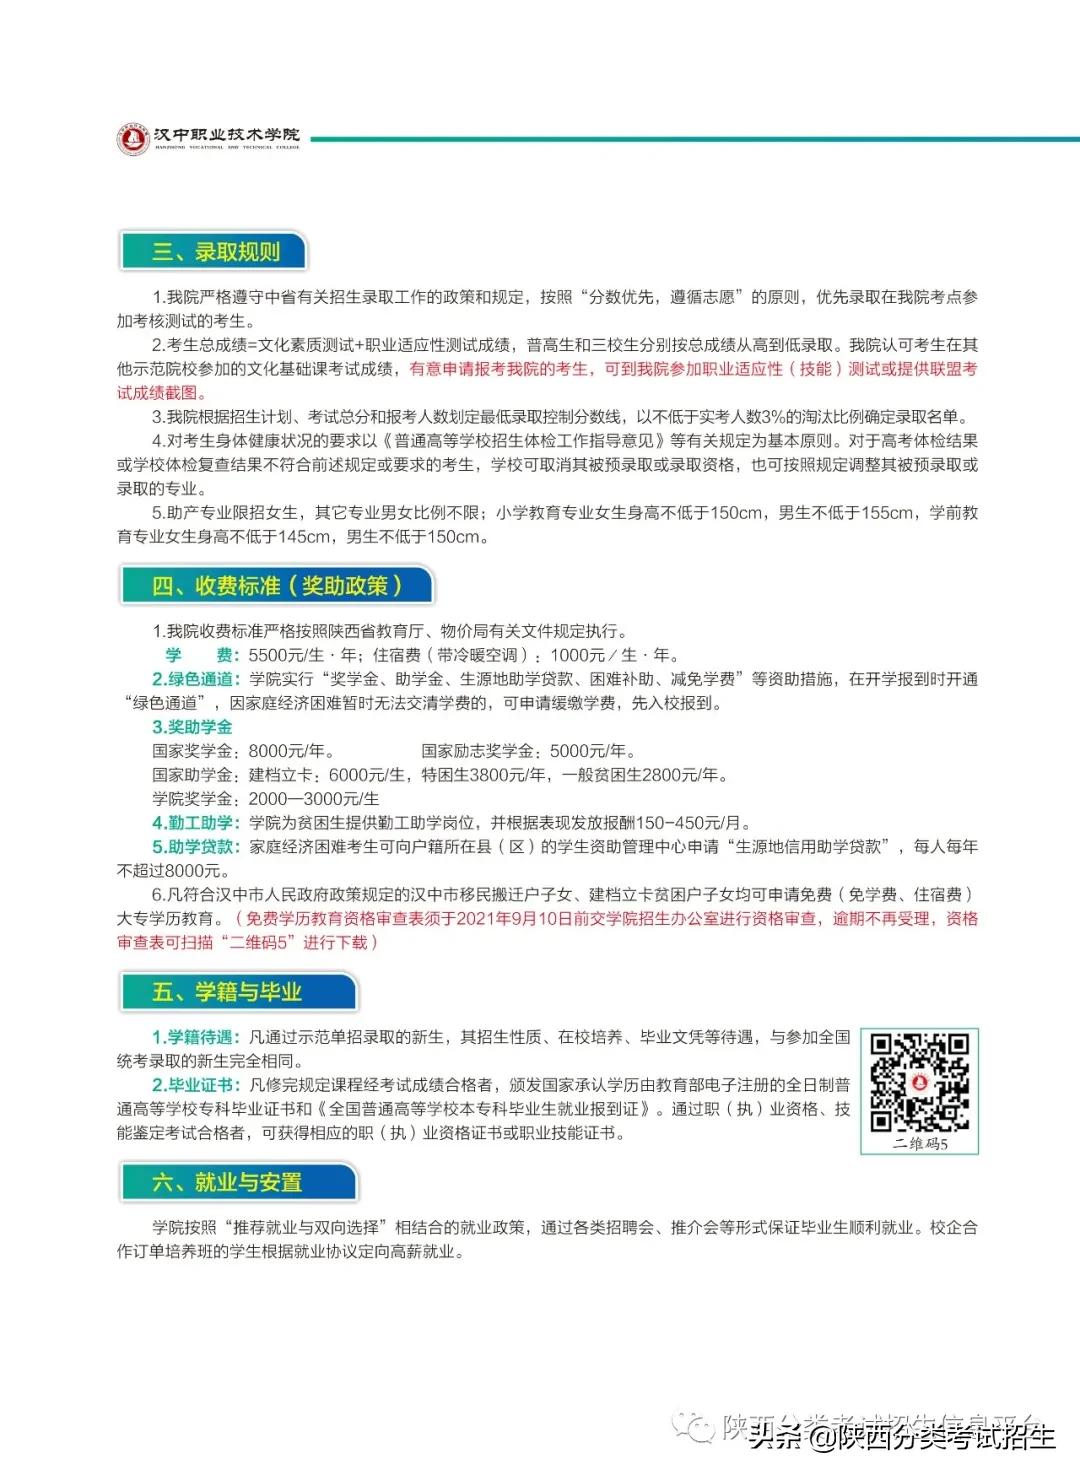 漢中職業技術學院2021年單獨考試招生報考指南